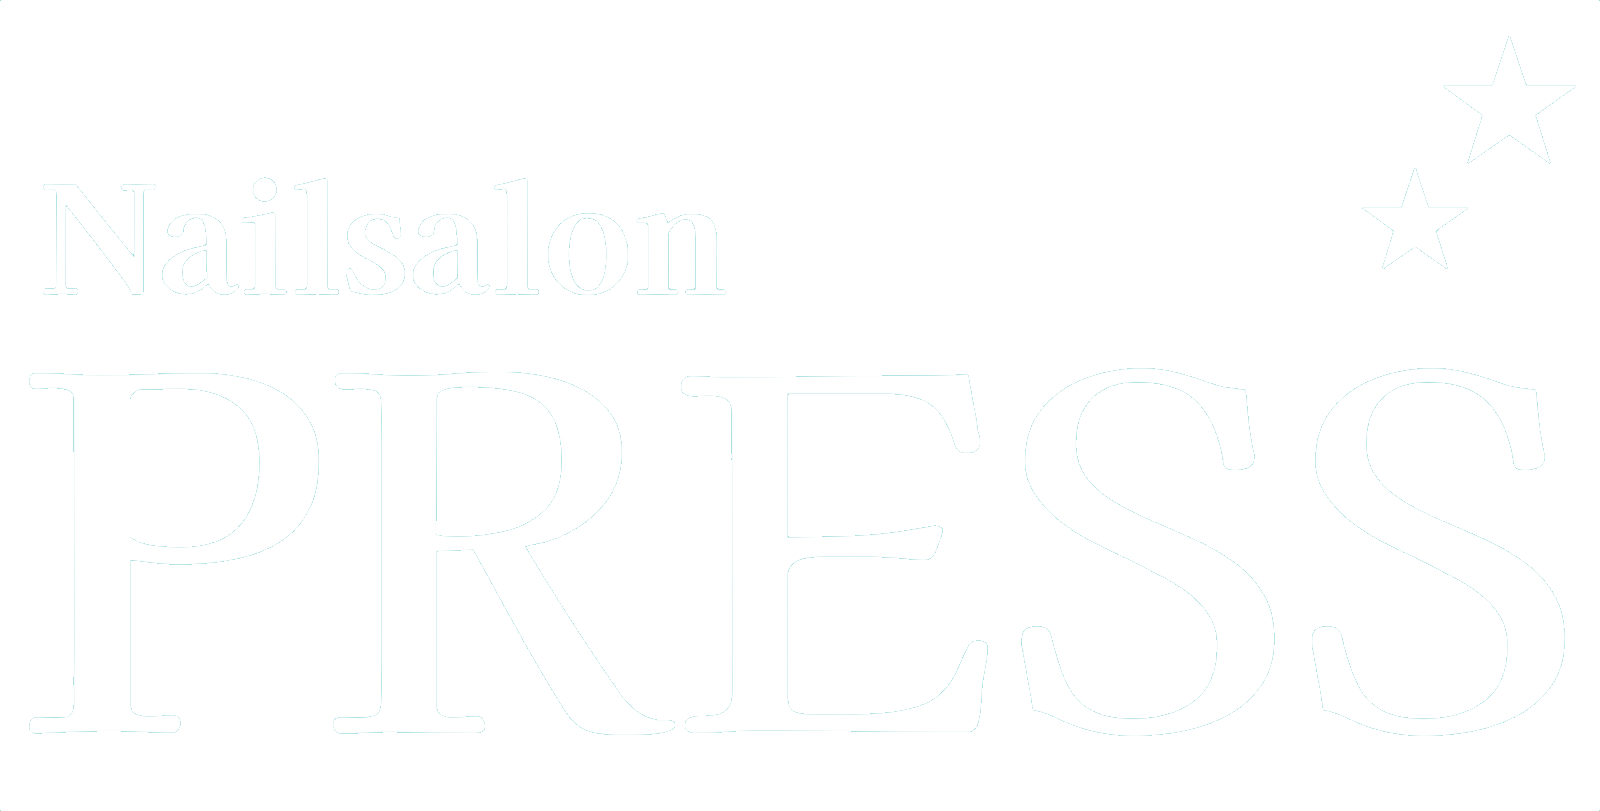 Nail salon PRESS